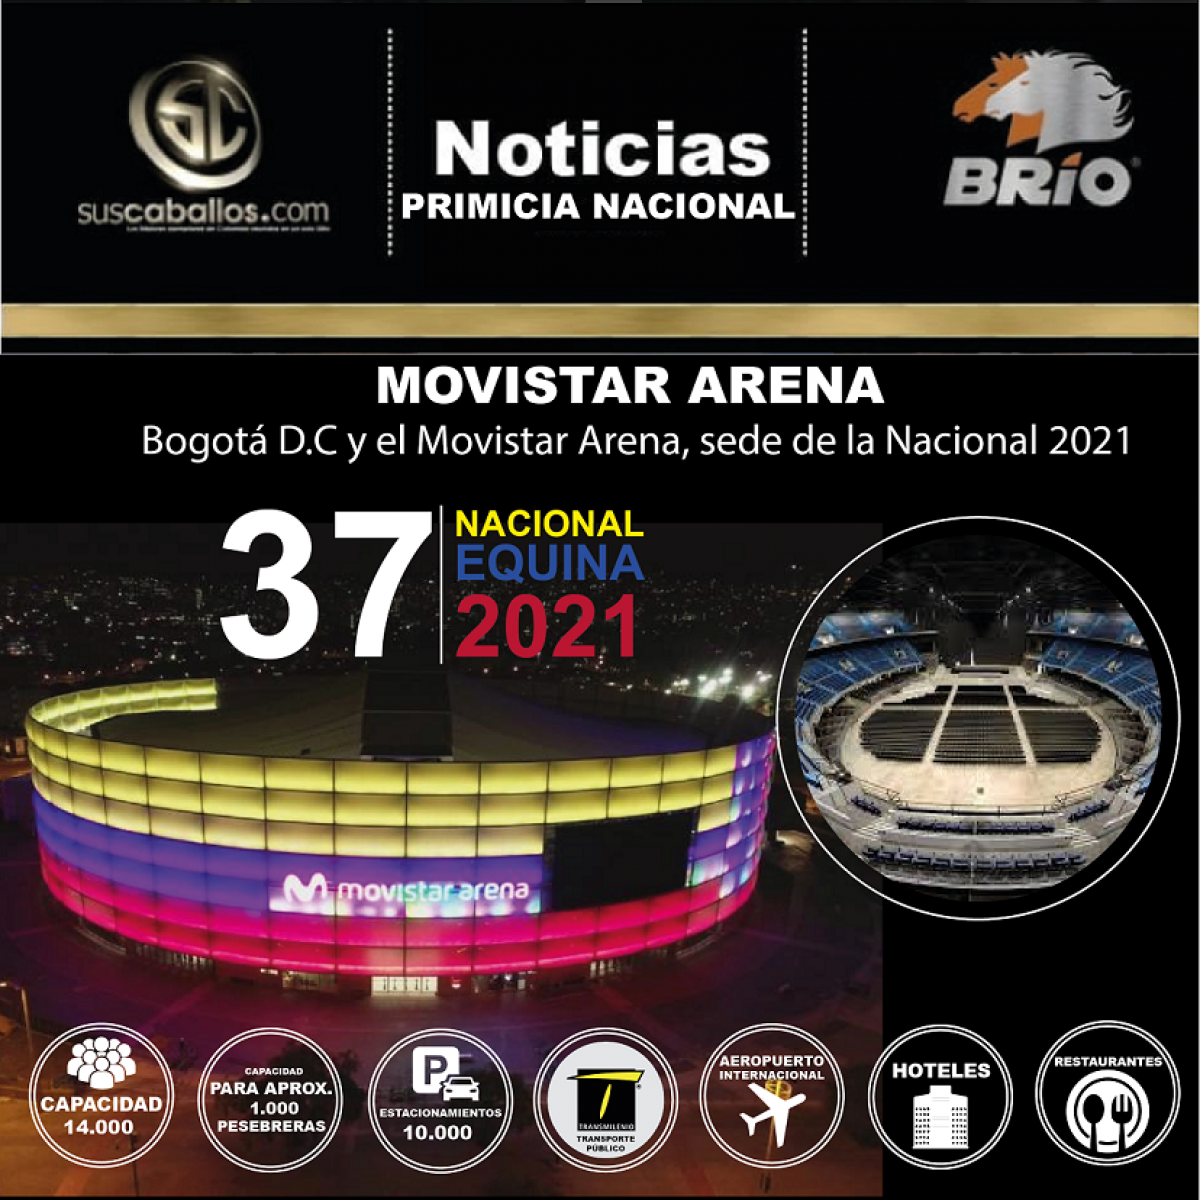 Bogota D.C y el Movistar Arena, sede de la Nacional 2021